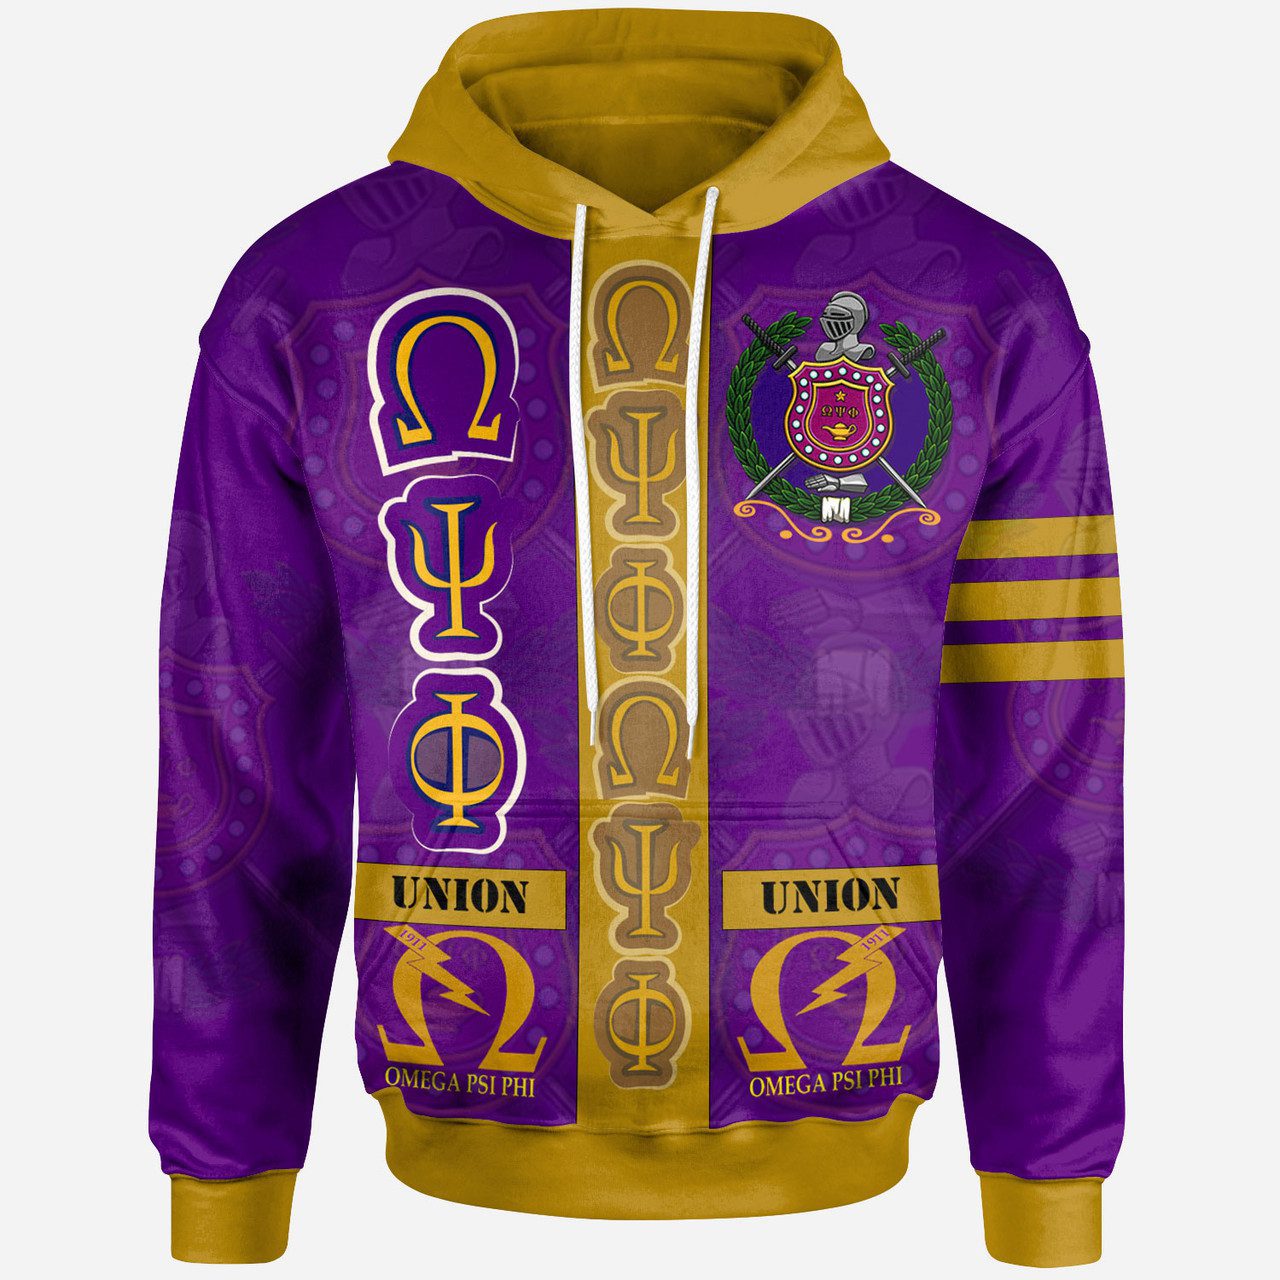 Omega Psi Phi Hoodie – Fraternity Pride Hoodie